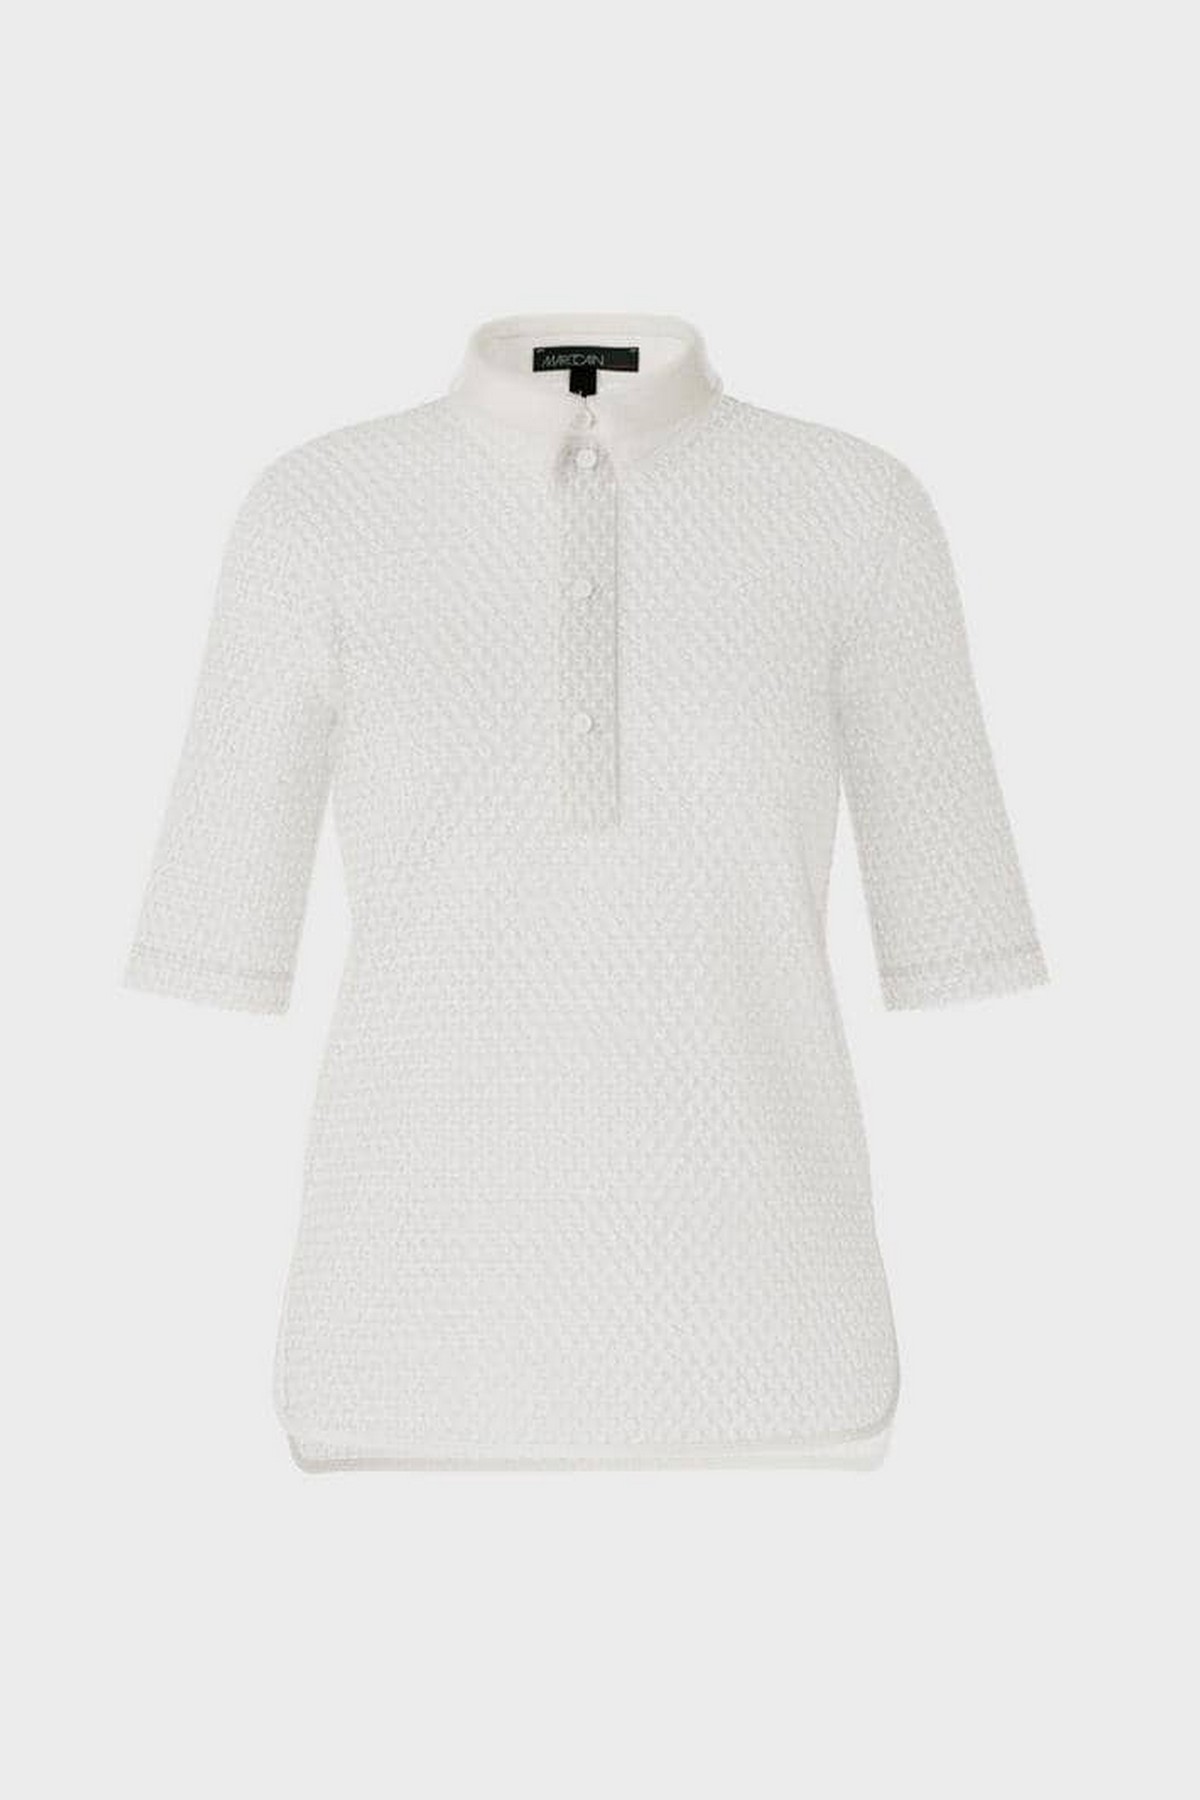 Poloshirt gehaakt in de kleur off white van het merk Marc Cain